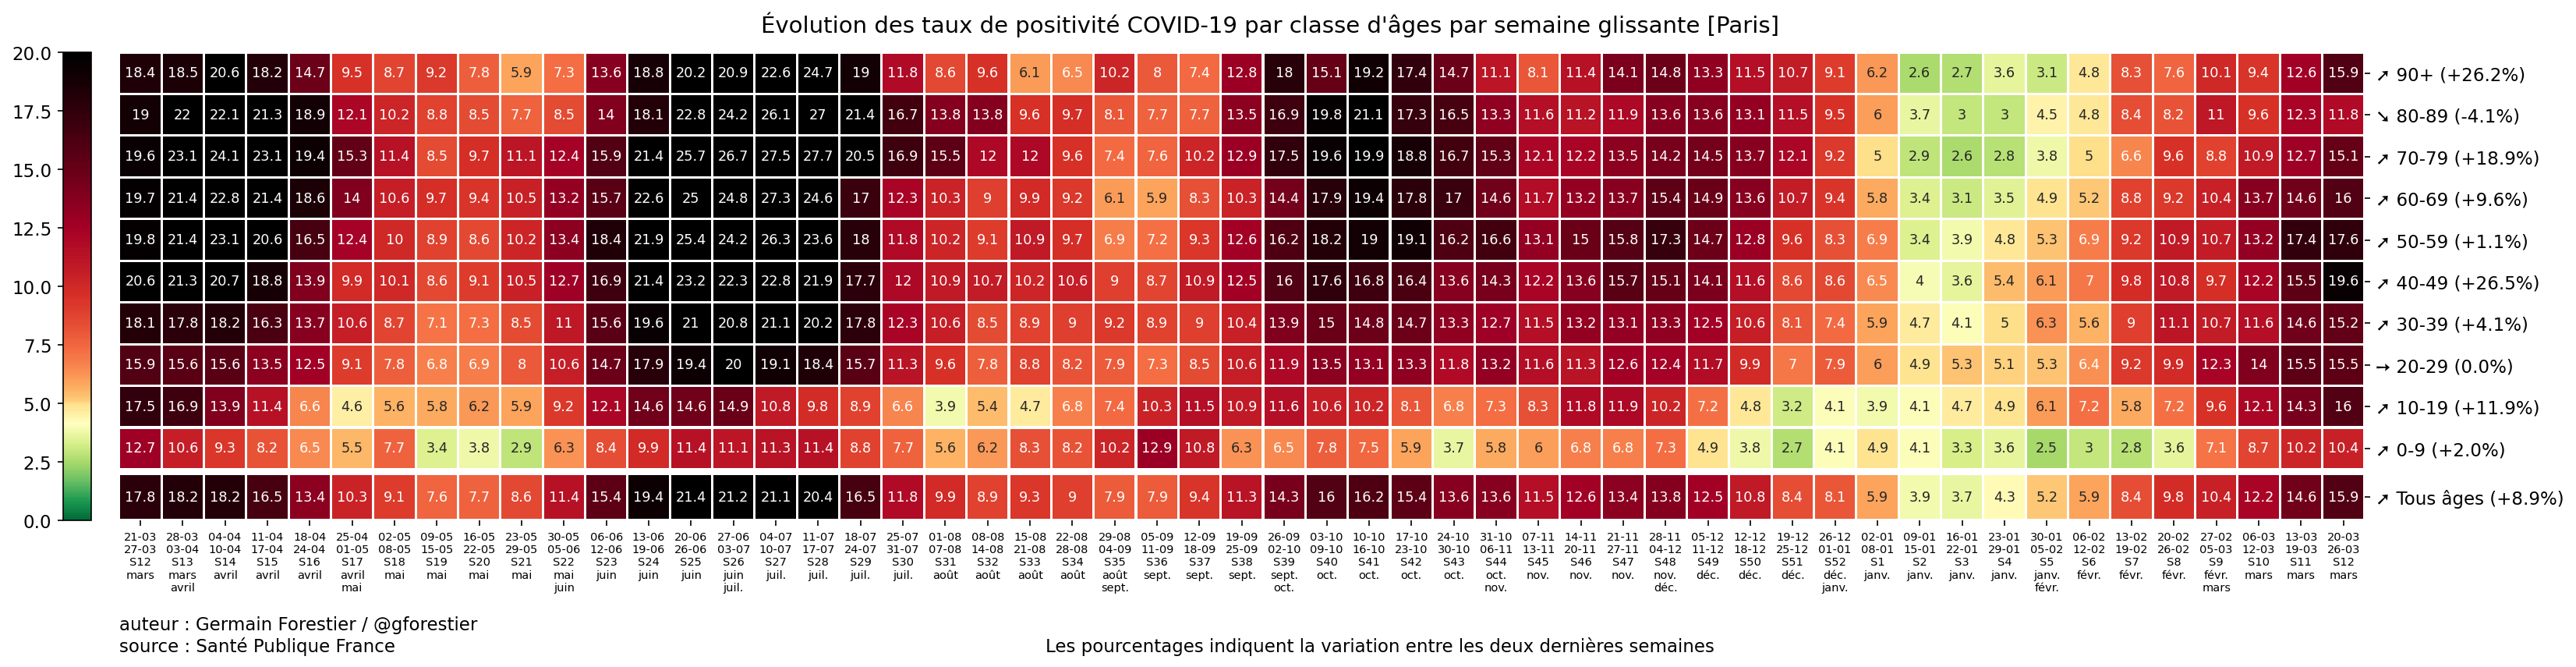 Le coronavirus COVID-19 - Infos, évolution et conséquences - Page 39 75_Paris-heatmap-pos-semaine